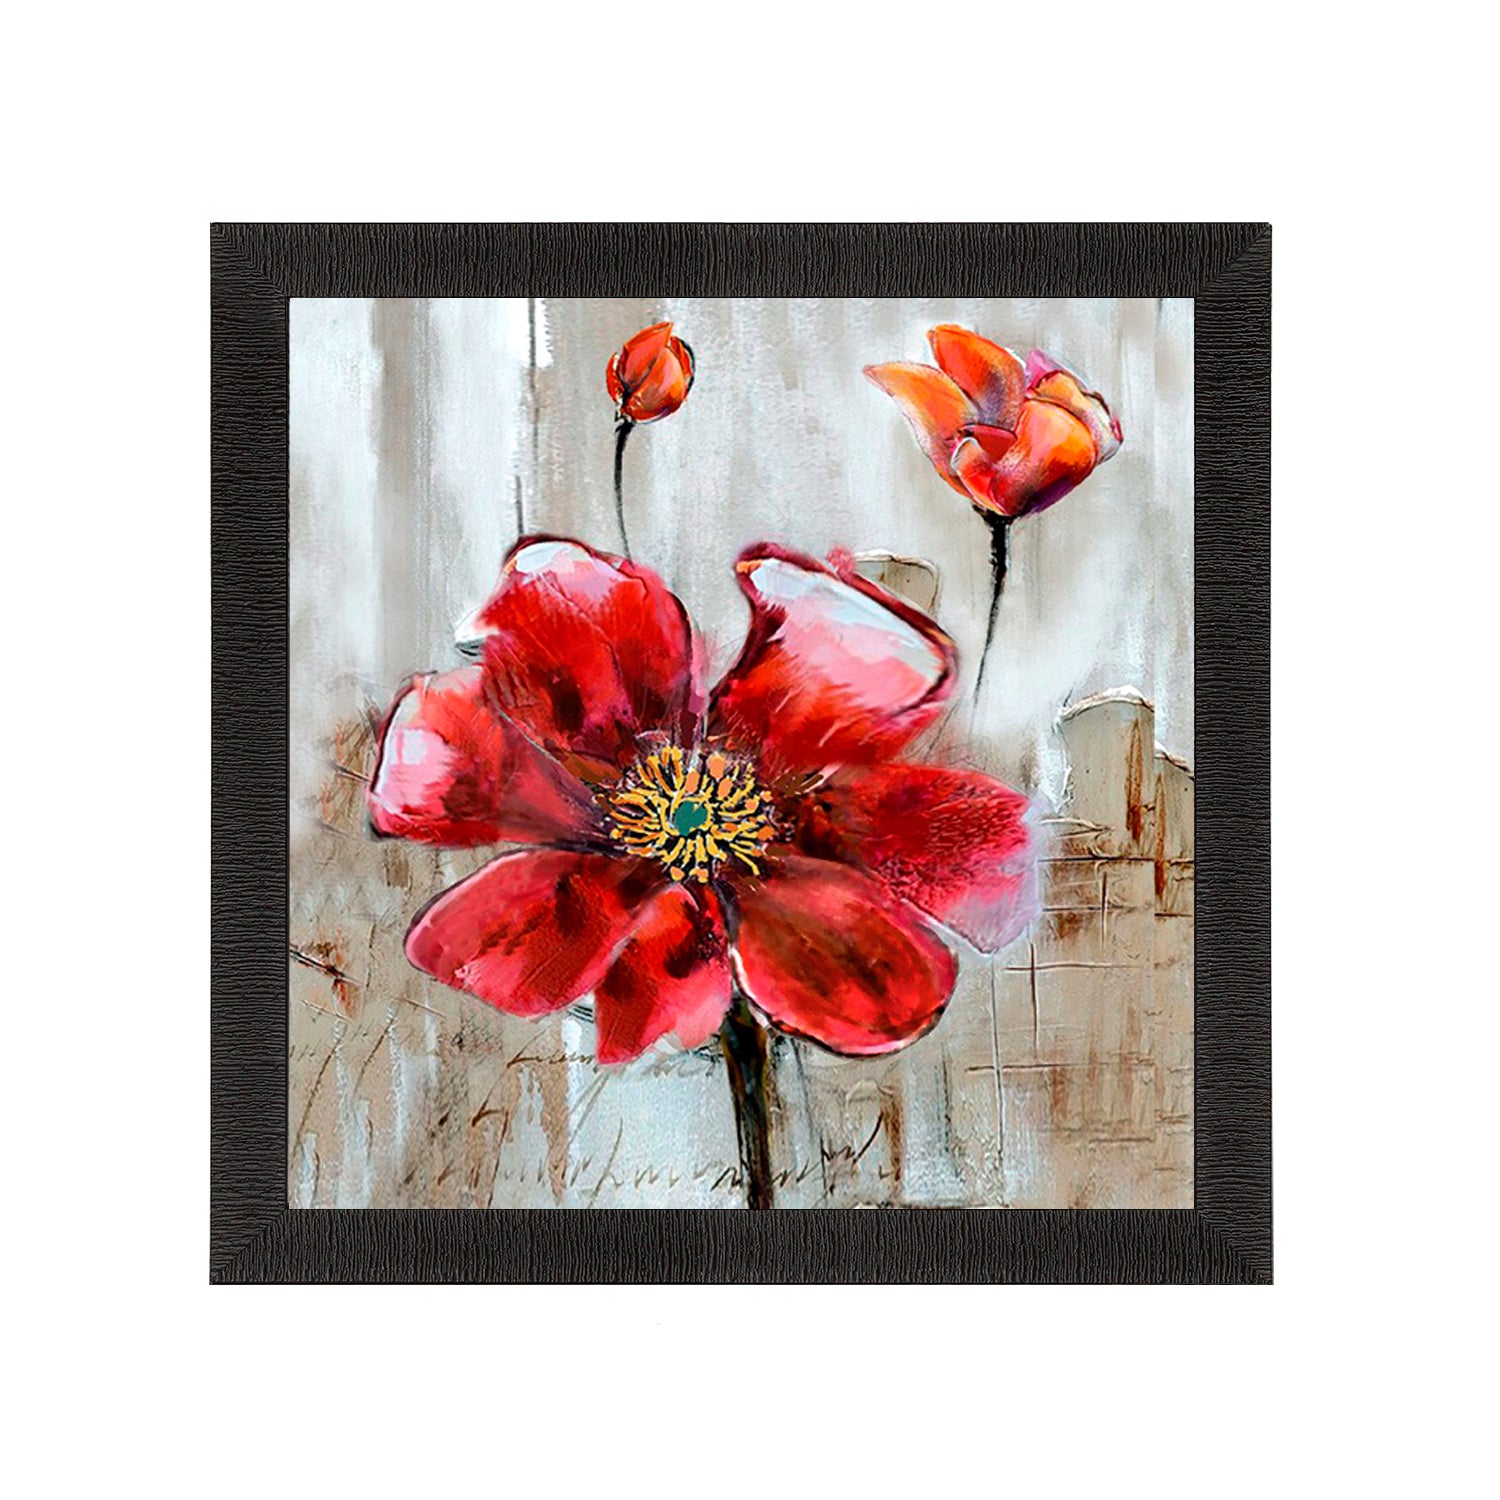 Flower Painting Digital Printed Floral Wall Art